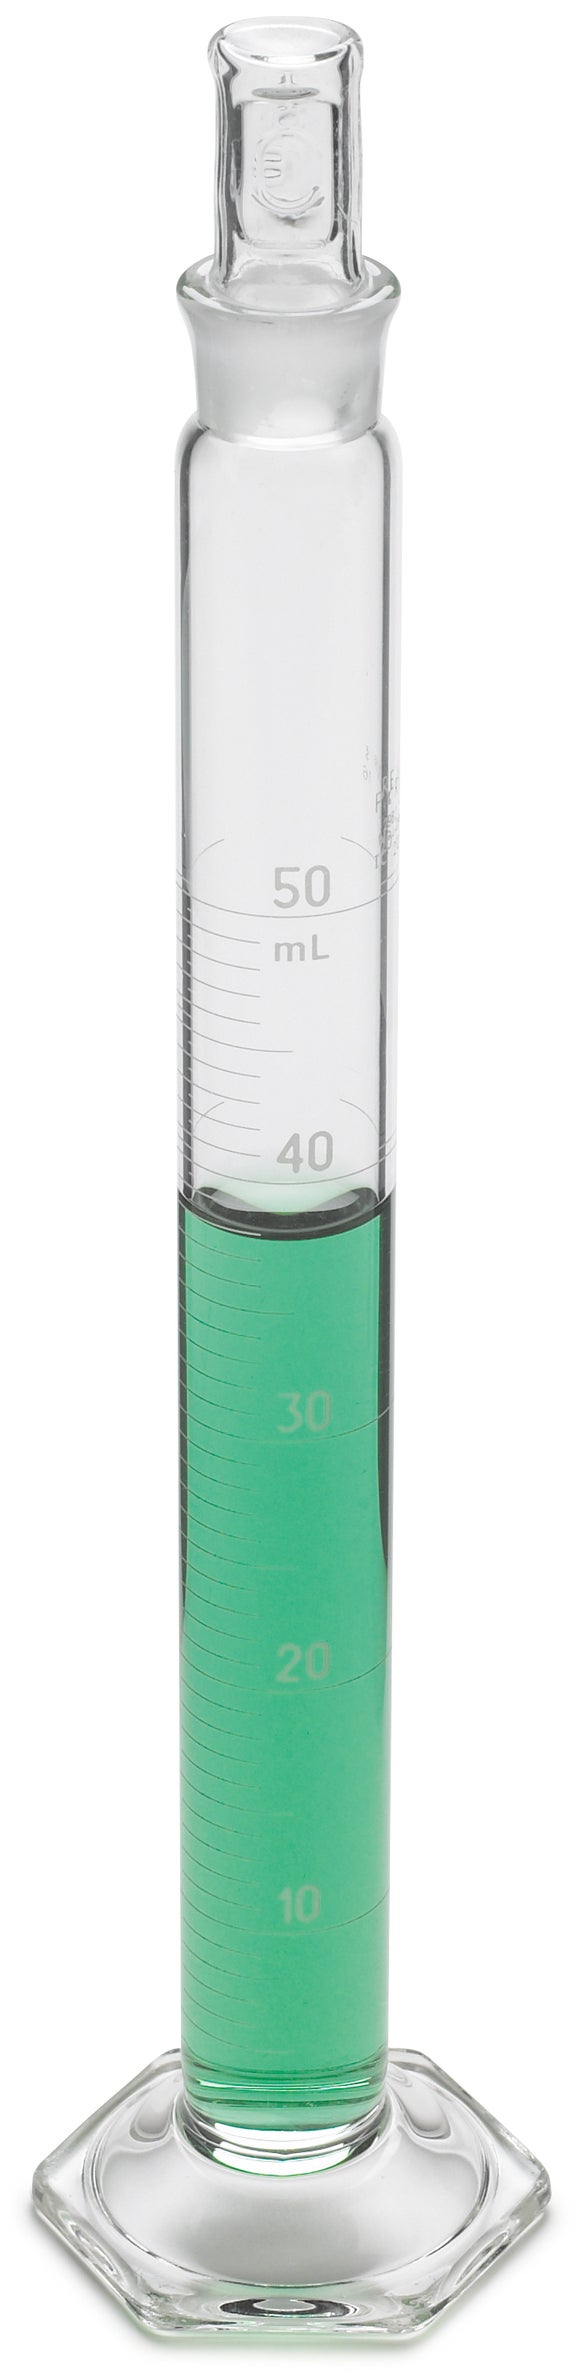 Cylindre, gradué, mélange, verre, 50 mL +-0,4 mL, divisions de 1,0 mL, bouchon en verre n° 16